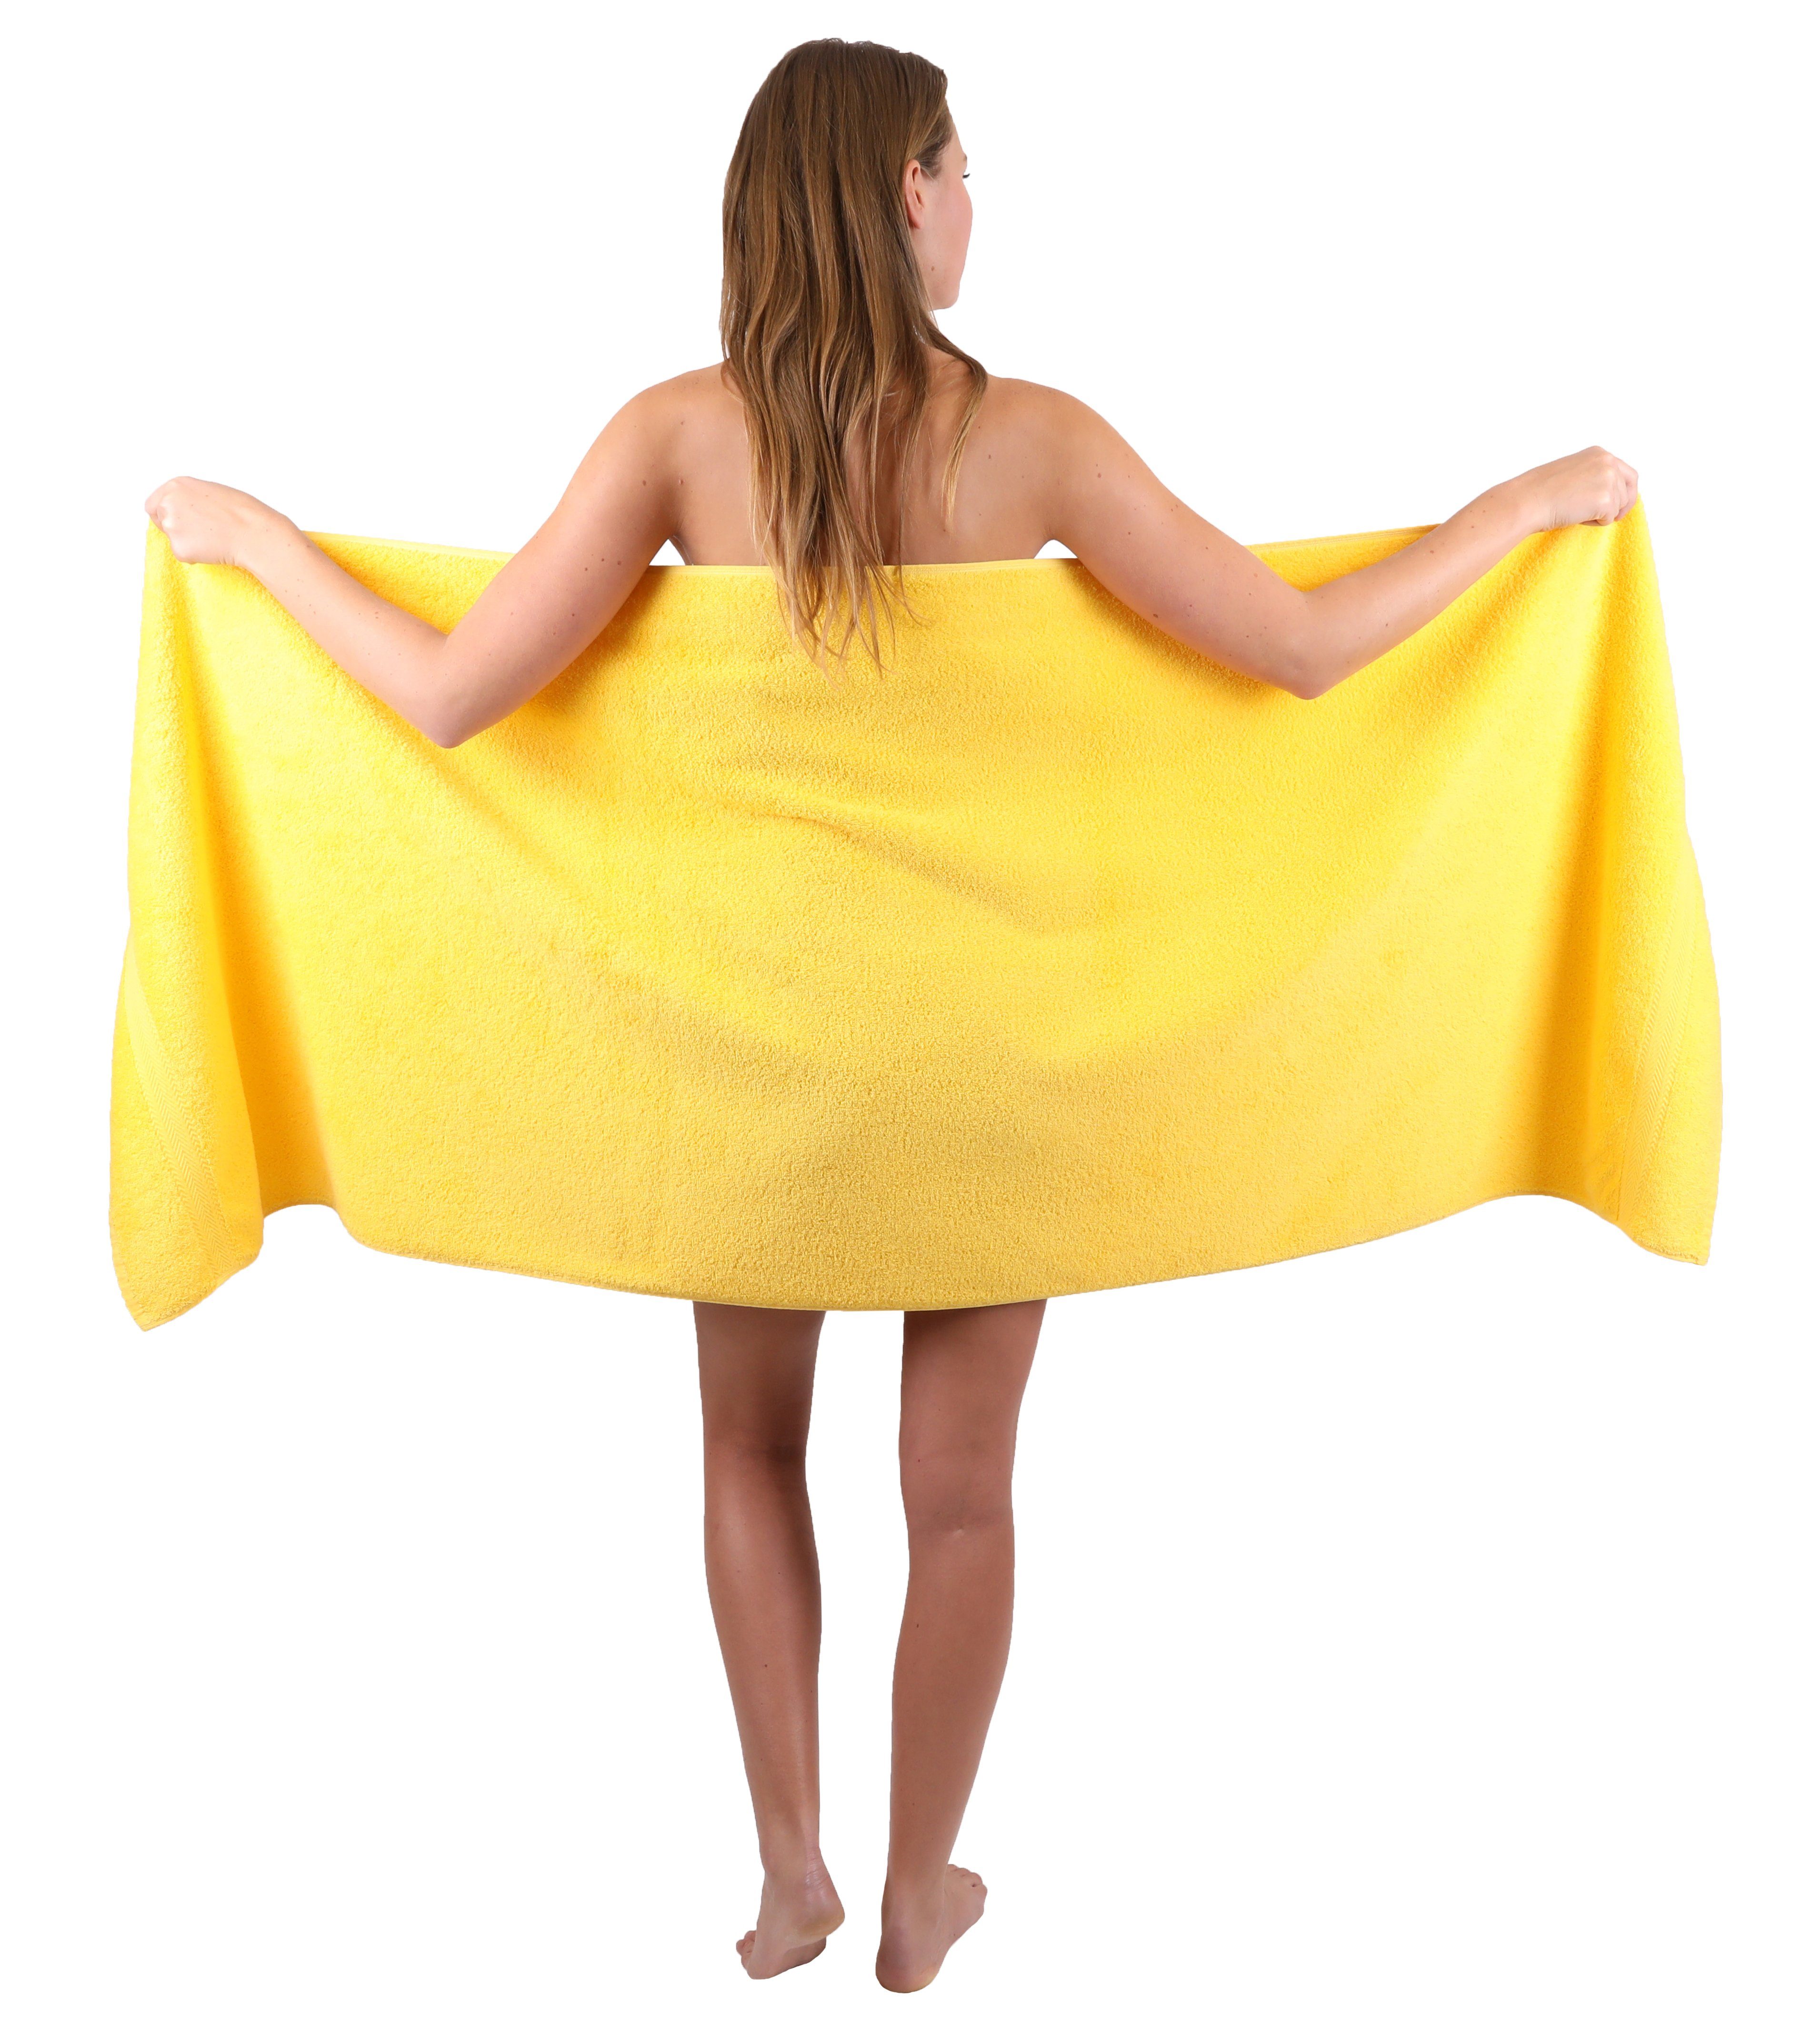 Betz Handtuch Set 3-TLG. Strandtuch Baumwolle gelb, Handtuch 1 Set Farbe Saunatuch 2 Badetuch 50x100 cm 70x200 Frottee cm Premium Tuch Liegetuch 100% Tücher